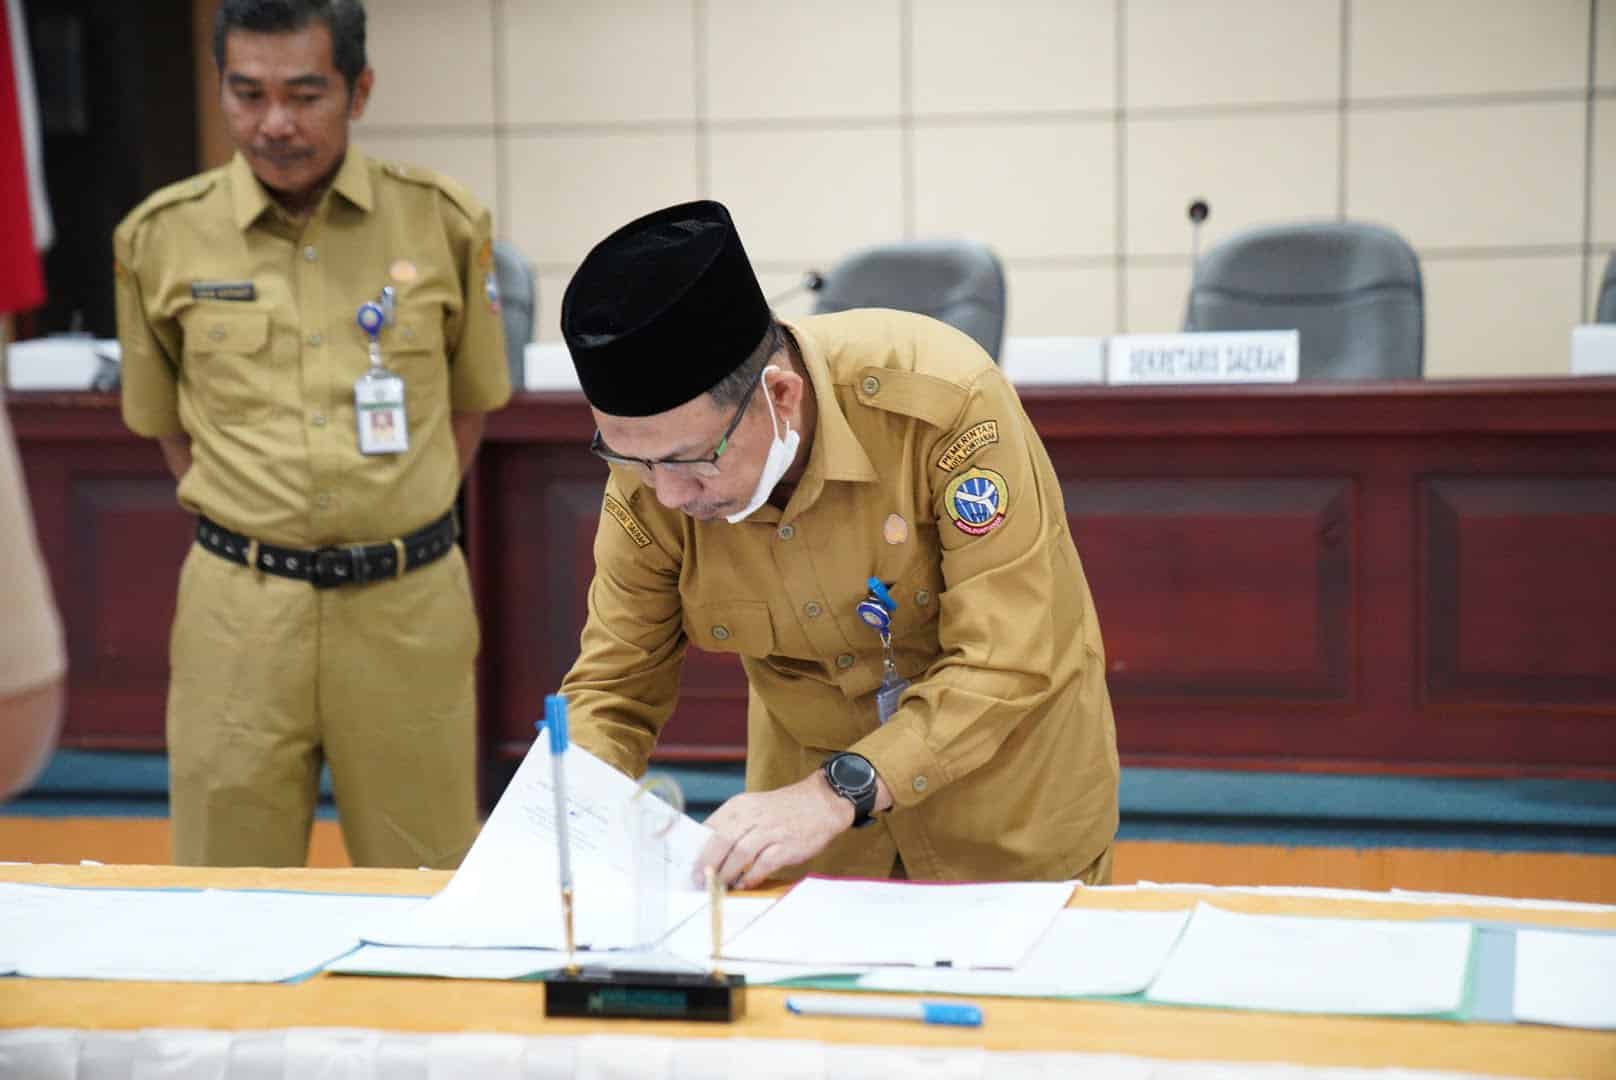 Sekretaris Daerah Kota Pontianak, Mulyadi beserta pejabat di lingkungan Sekretariat Daerah Kota Pontianak menandatangani perjanjian kinerja dan pakta integritas. (Foto: Prokopim For KalbarOnline.com)